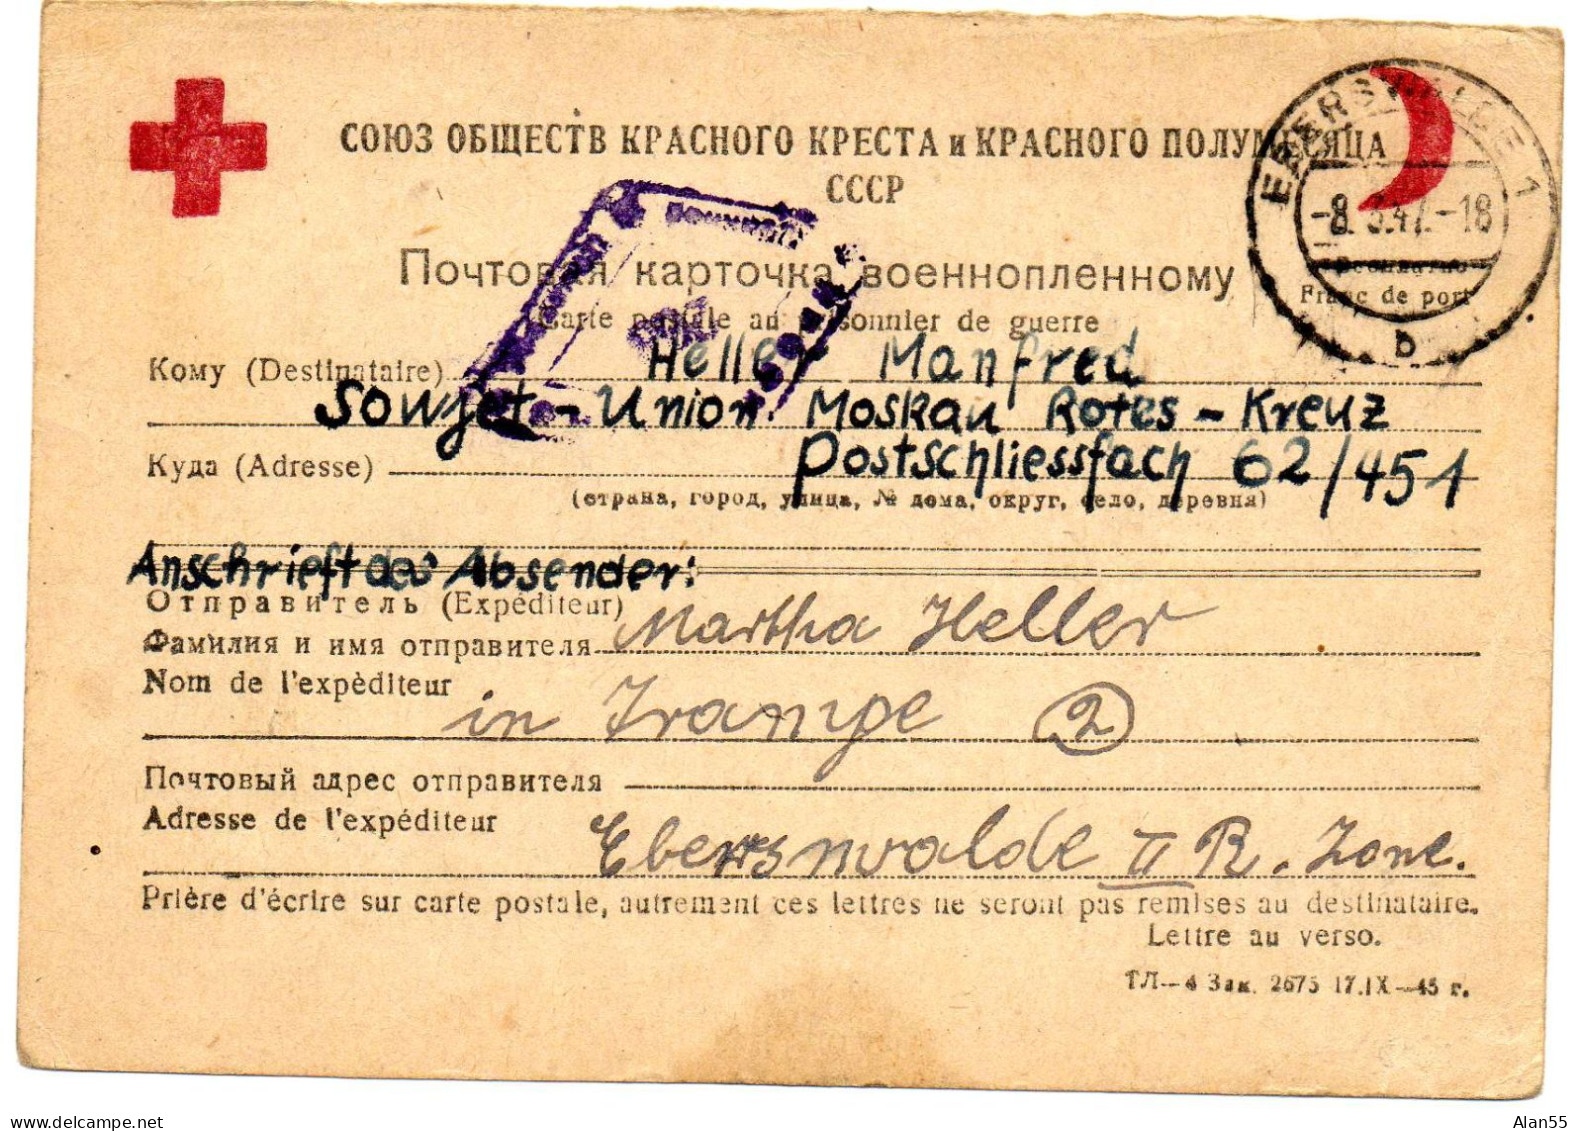 URSS. 1947. CARTE FAMILIALE CROIX-ROUGE. (SENS ALLEMAGNE-URSS). CENSURE - Covers & Documents